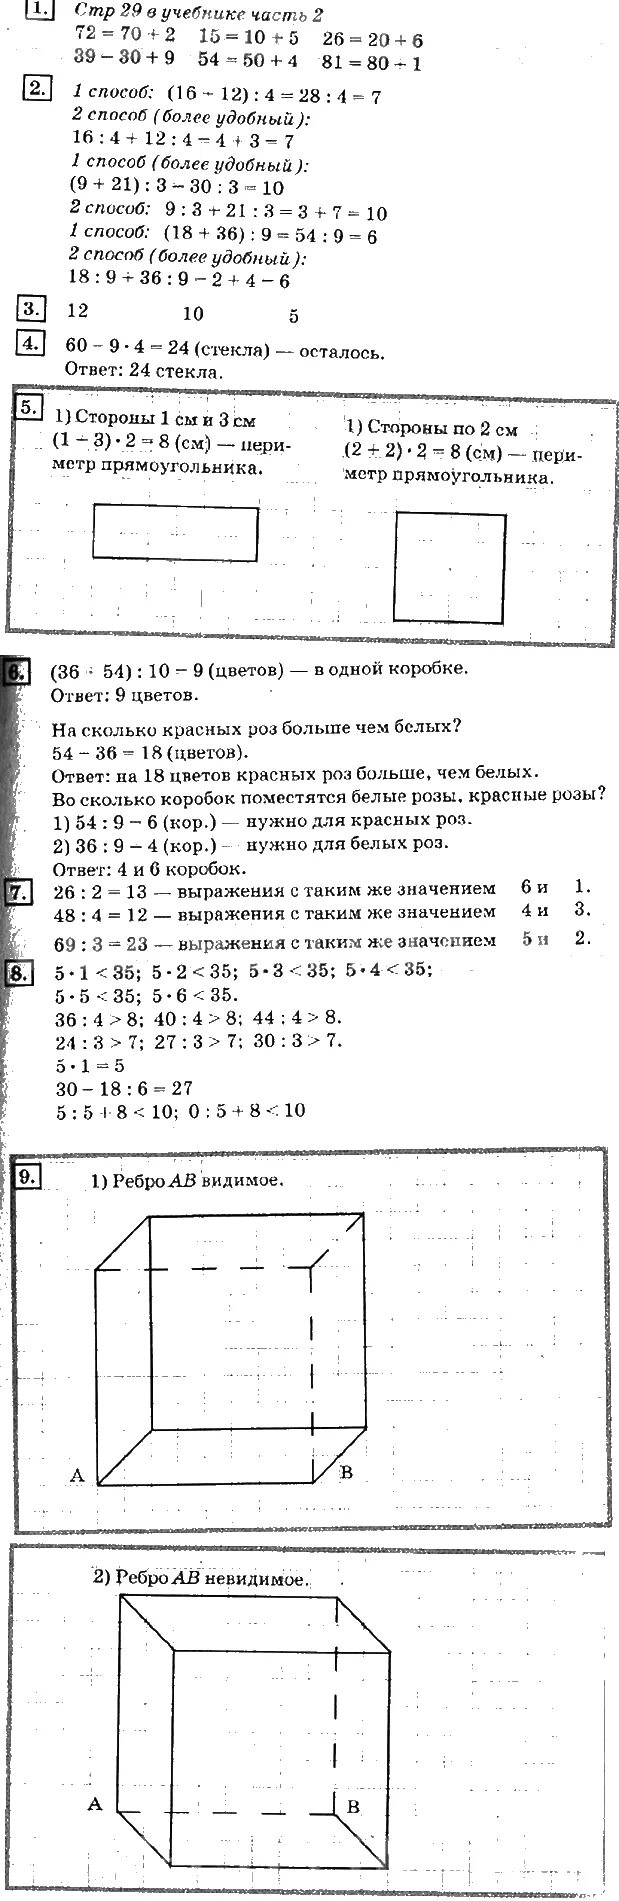 Учебник дорофеев 8 ответы. Дорофеев Миракова бука 3 класс 2 часть. Математика 3 класс Дорофеев Миракова бука.